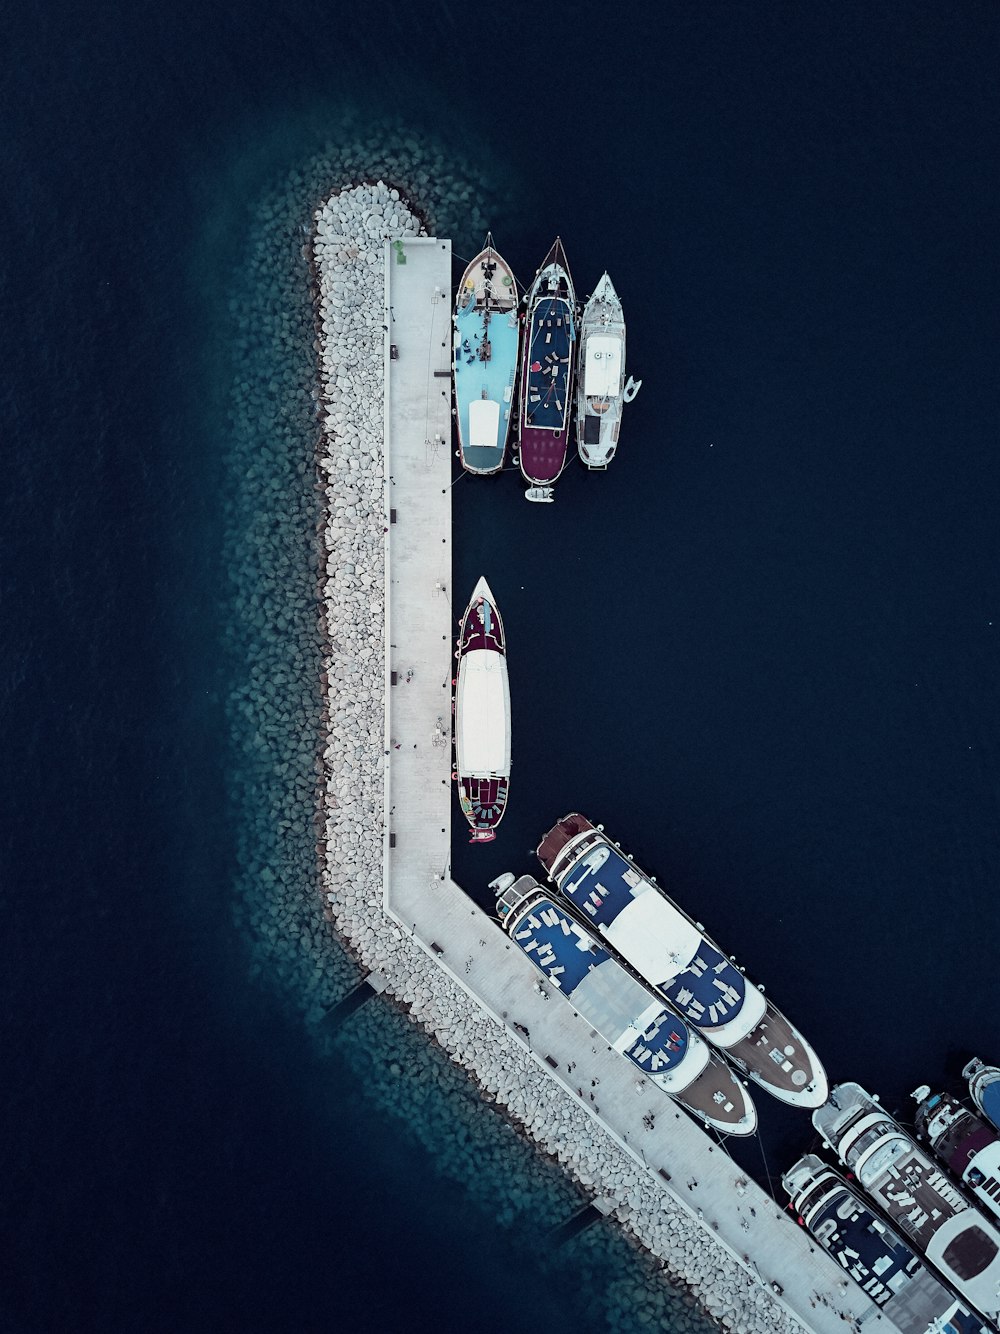 foto aerea del porto navale